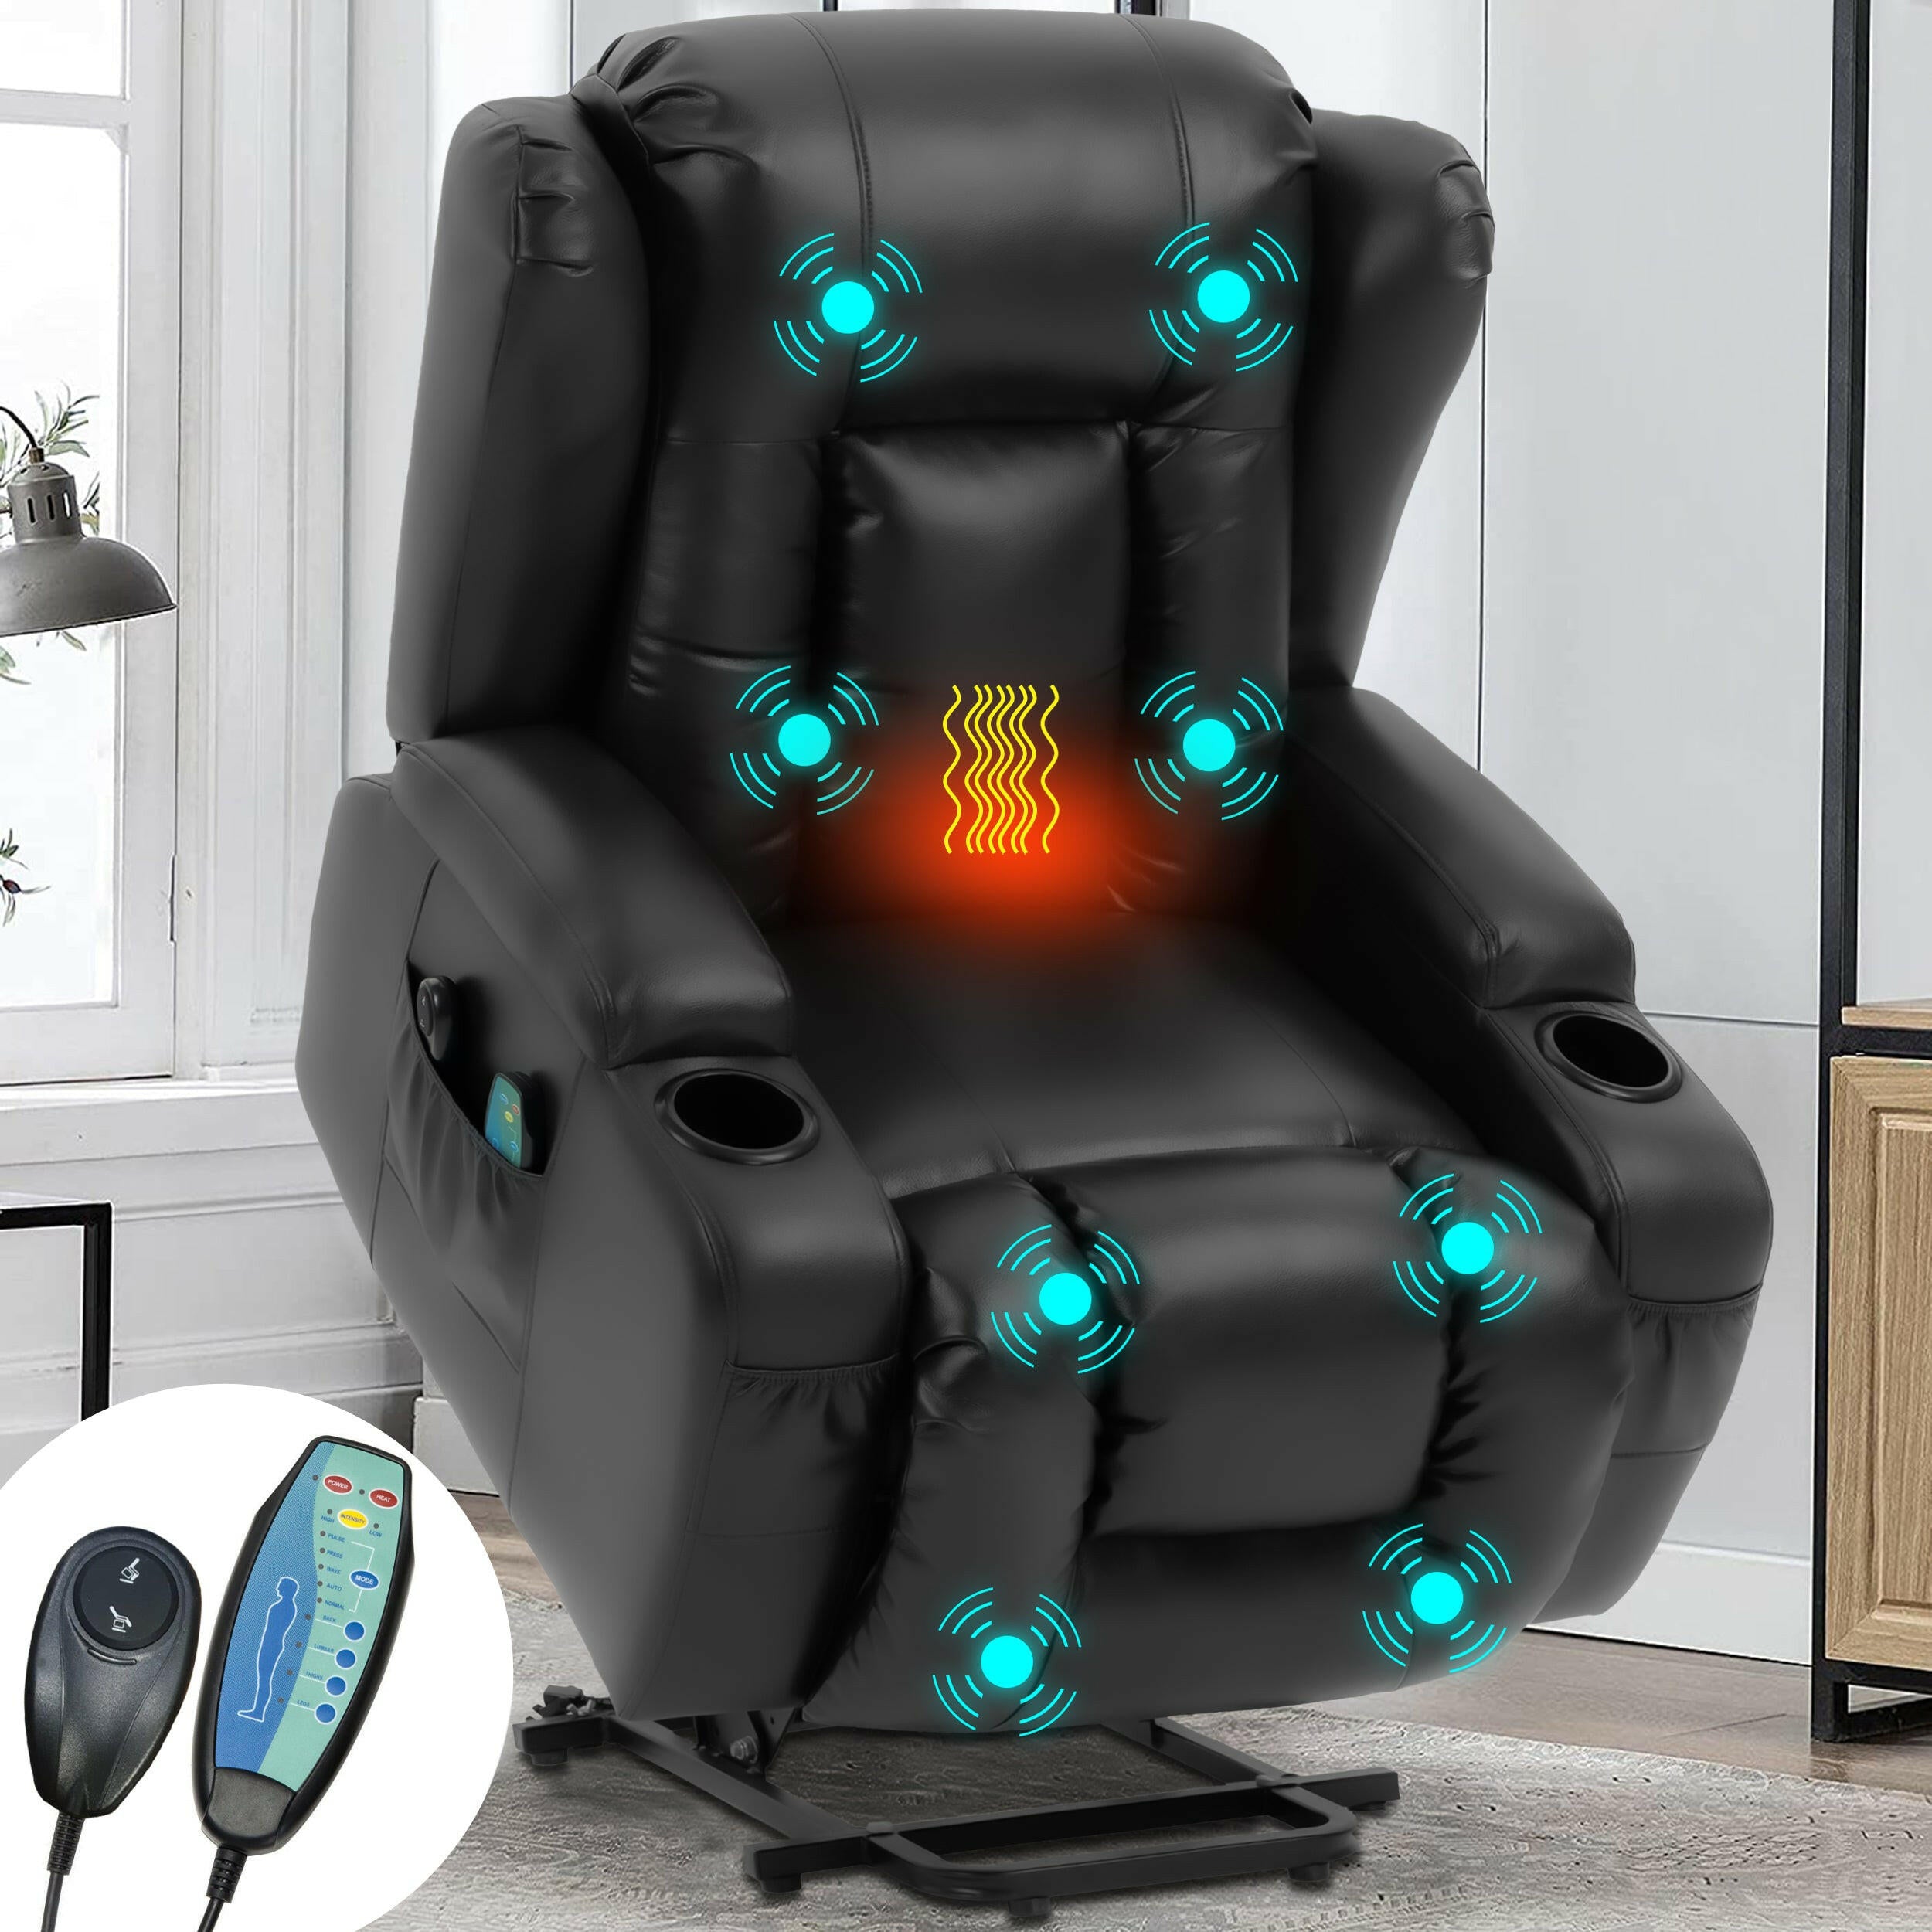 massage recliner chair